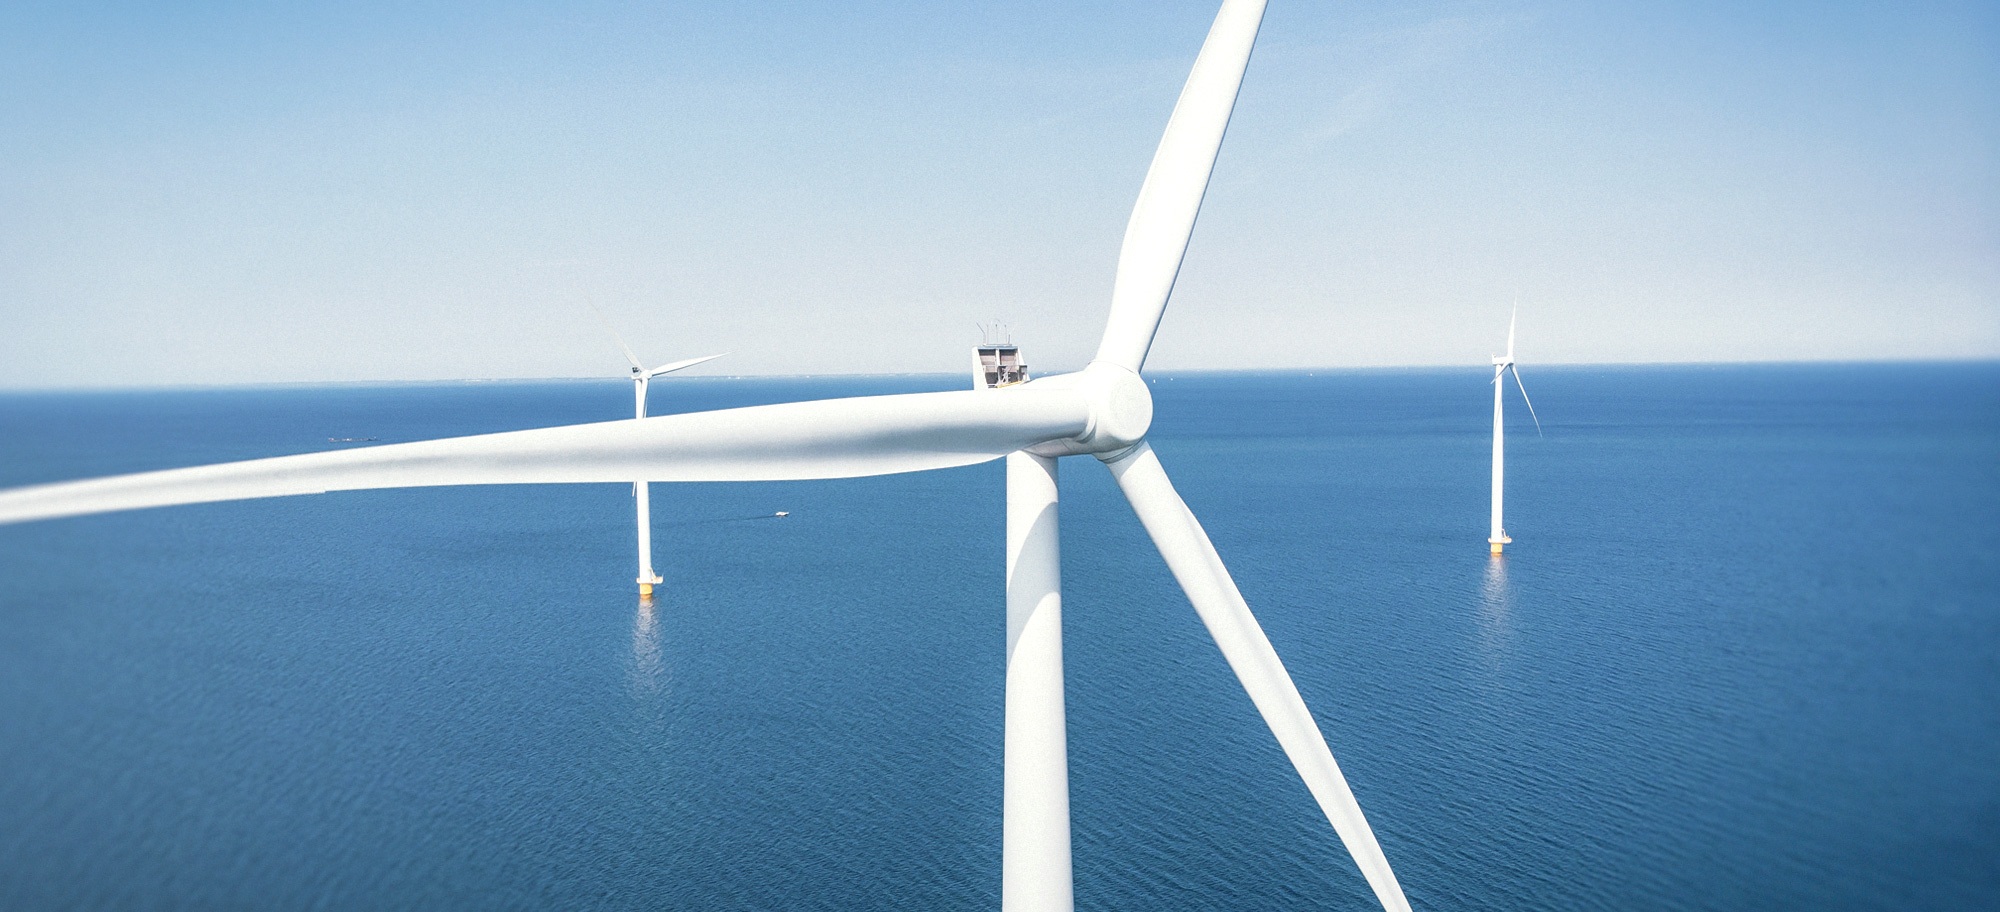 Ålandsbanken - Ålandsbanken Fondbolag och OX2 inleder samarbete kring havsbaserad vindkraft